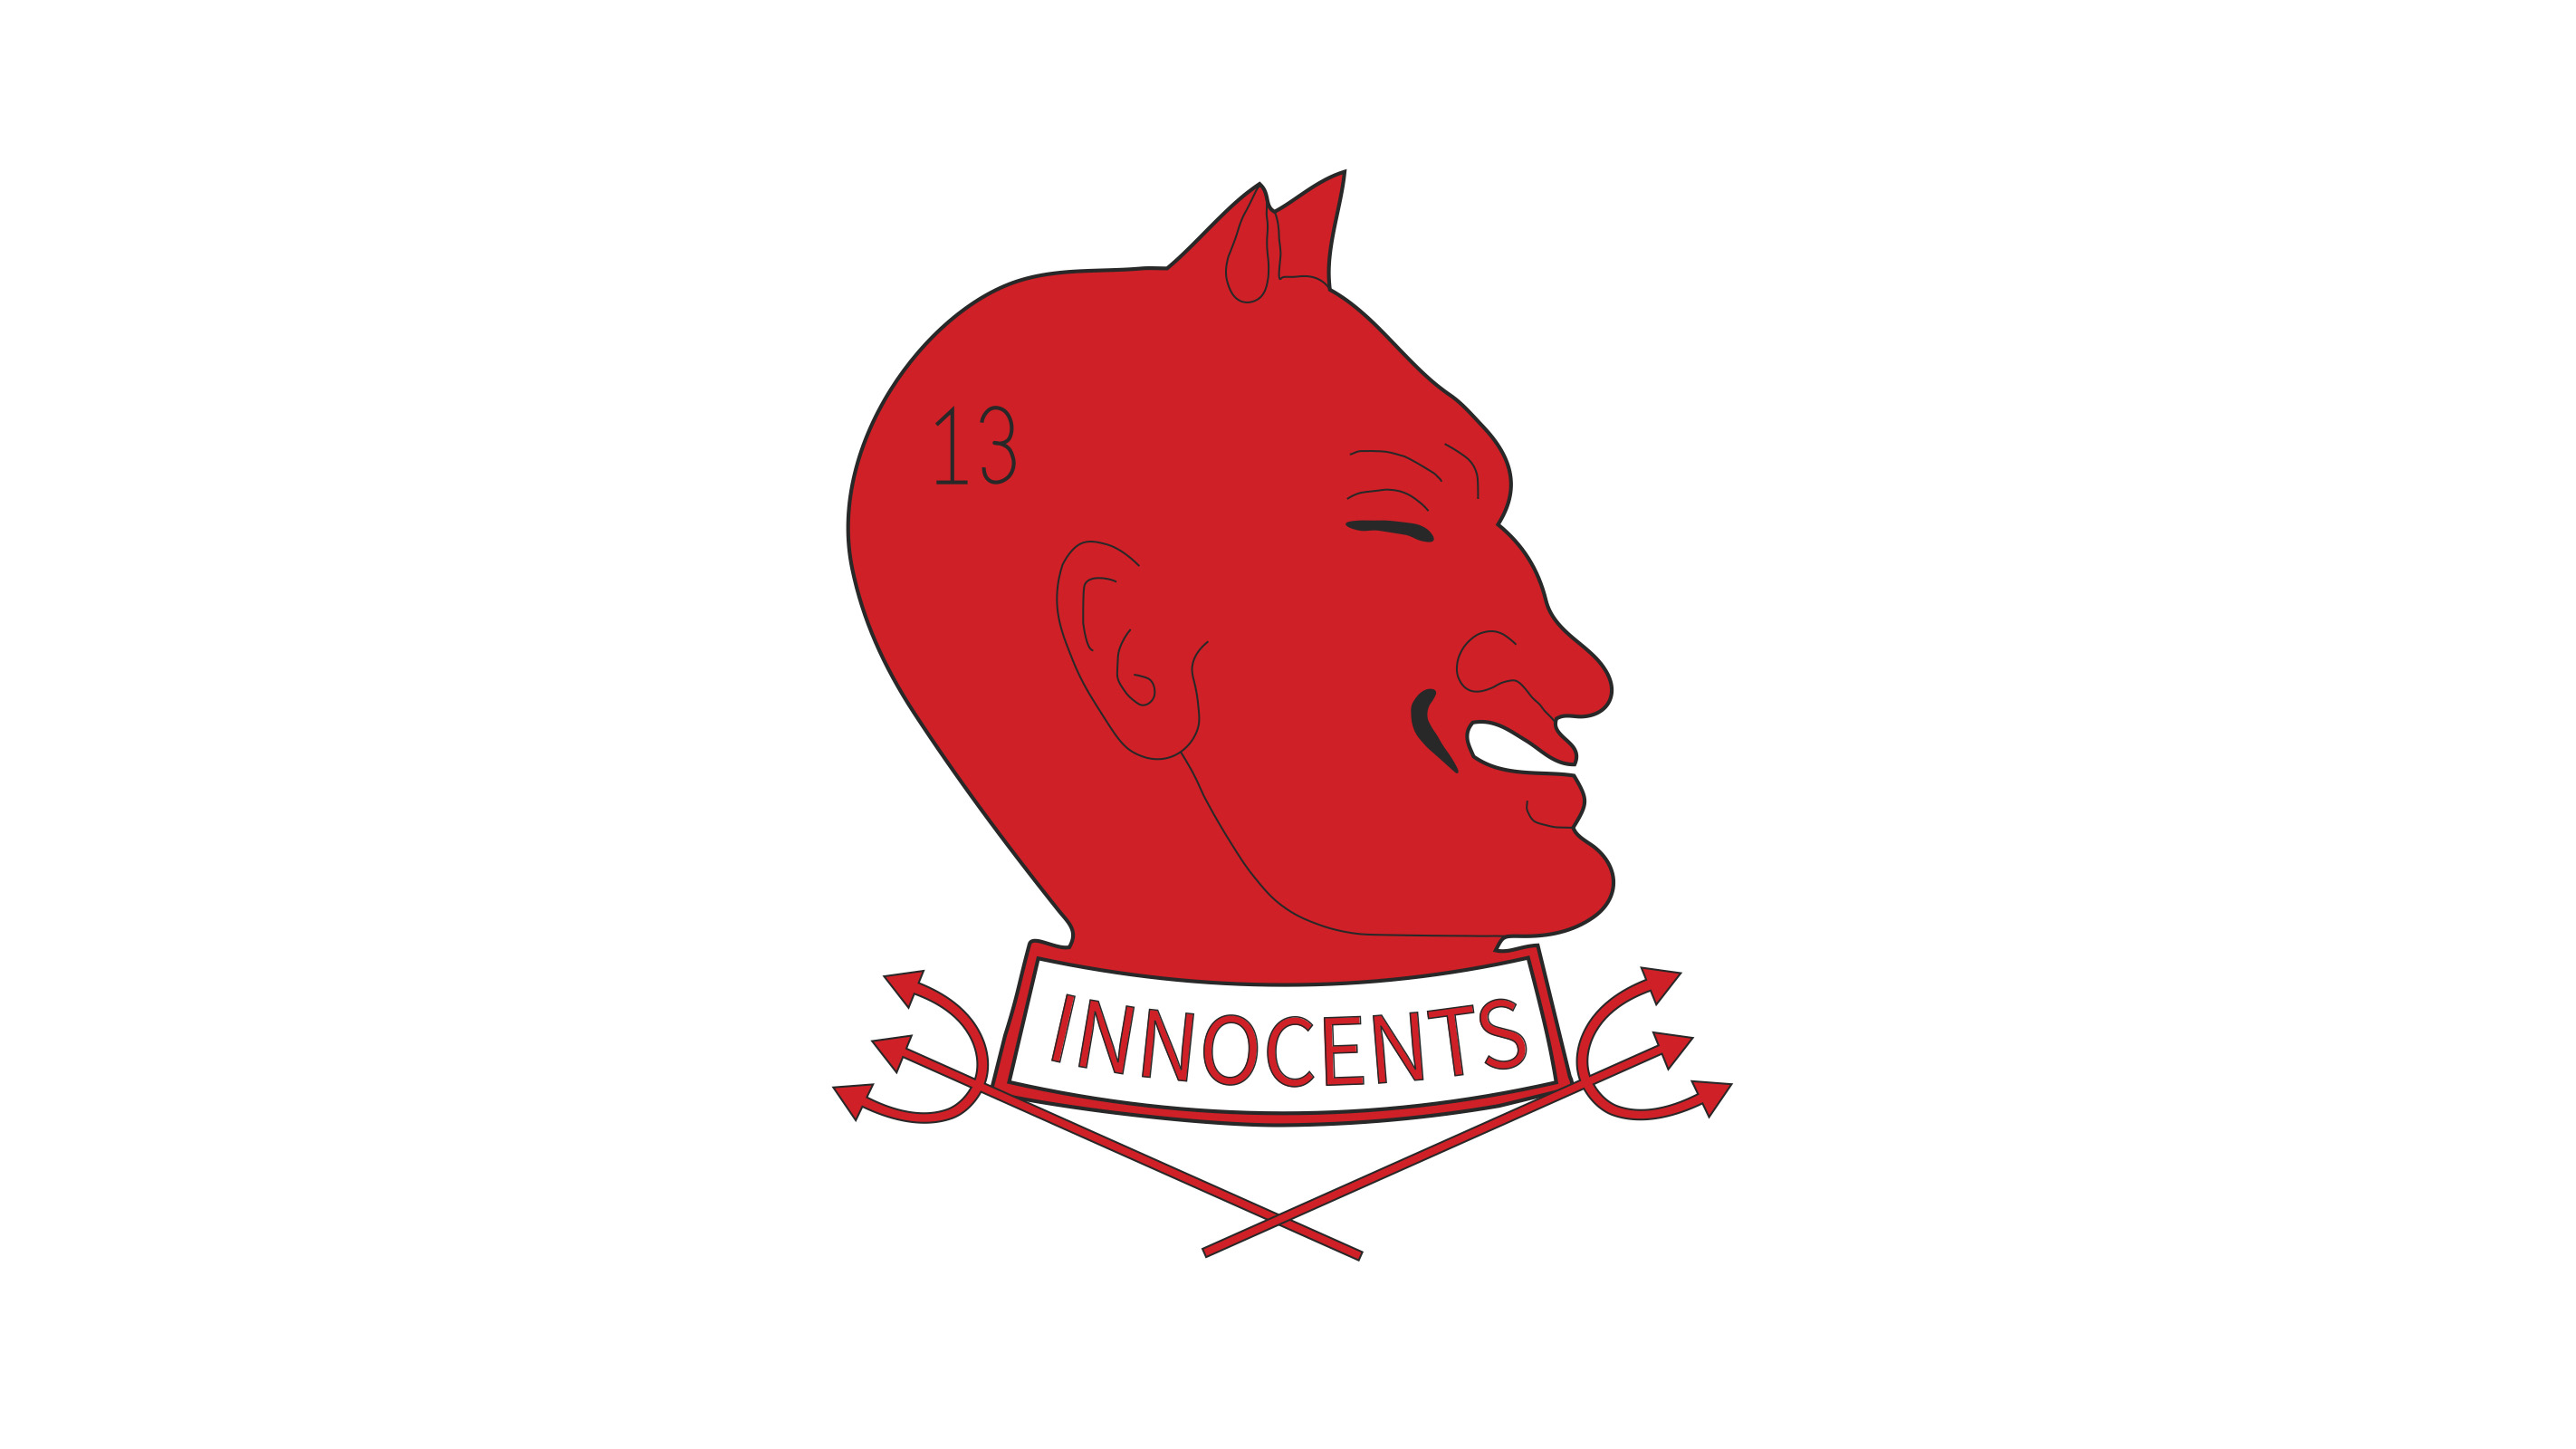 The Innocents Society